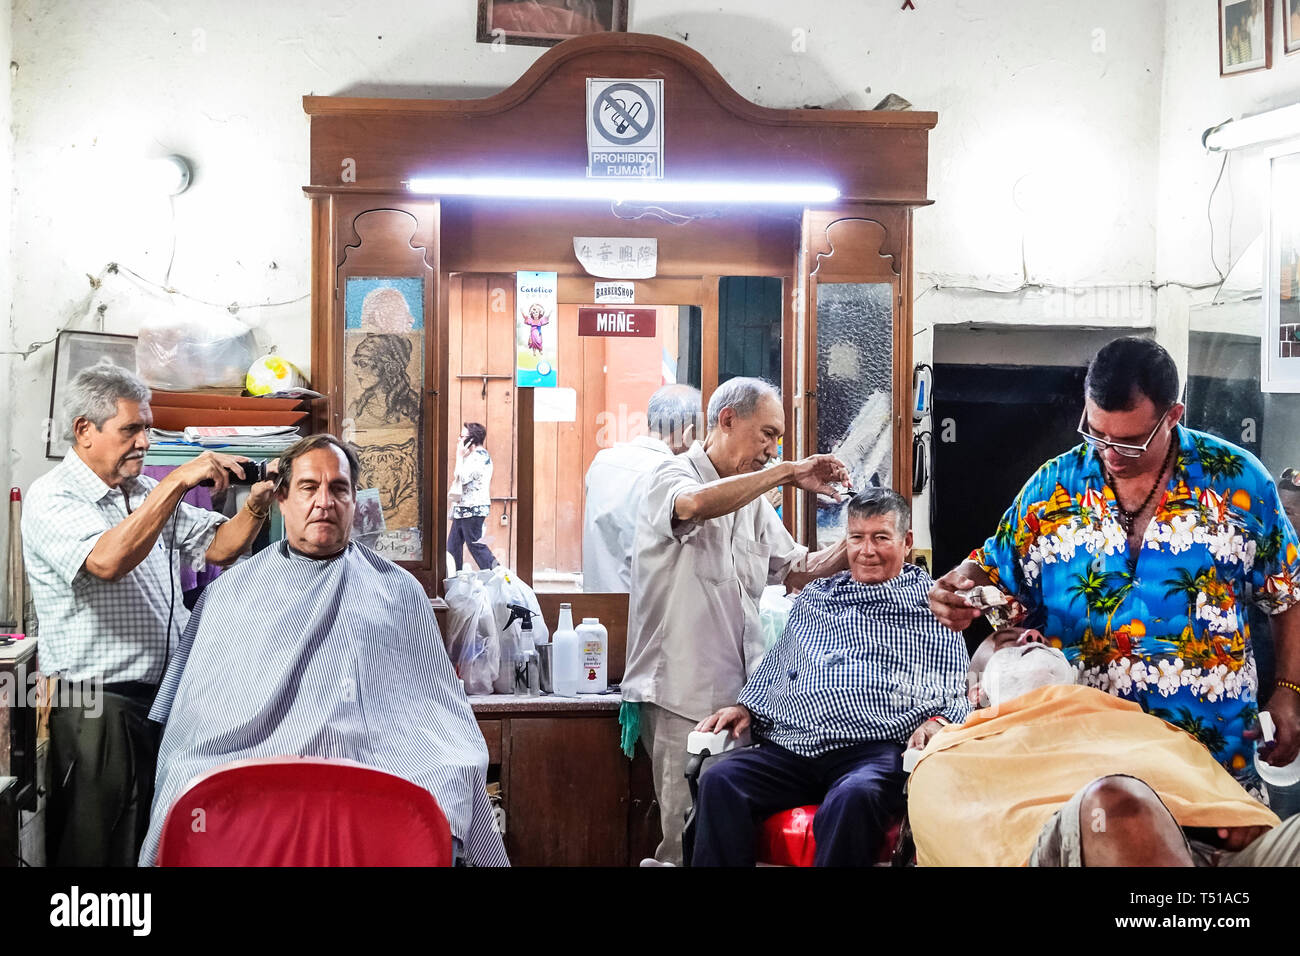 Cartagena Kolumbien, Einwohner Hispanics, Mann Männer männlich, Barbershop, Barberkunden, Haare schneiden, rasieren, COL190123105 Stockfoto